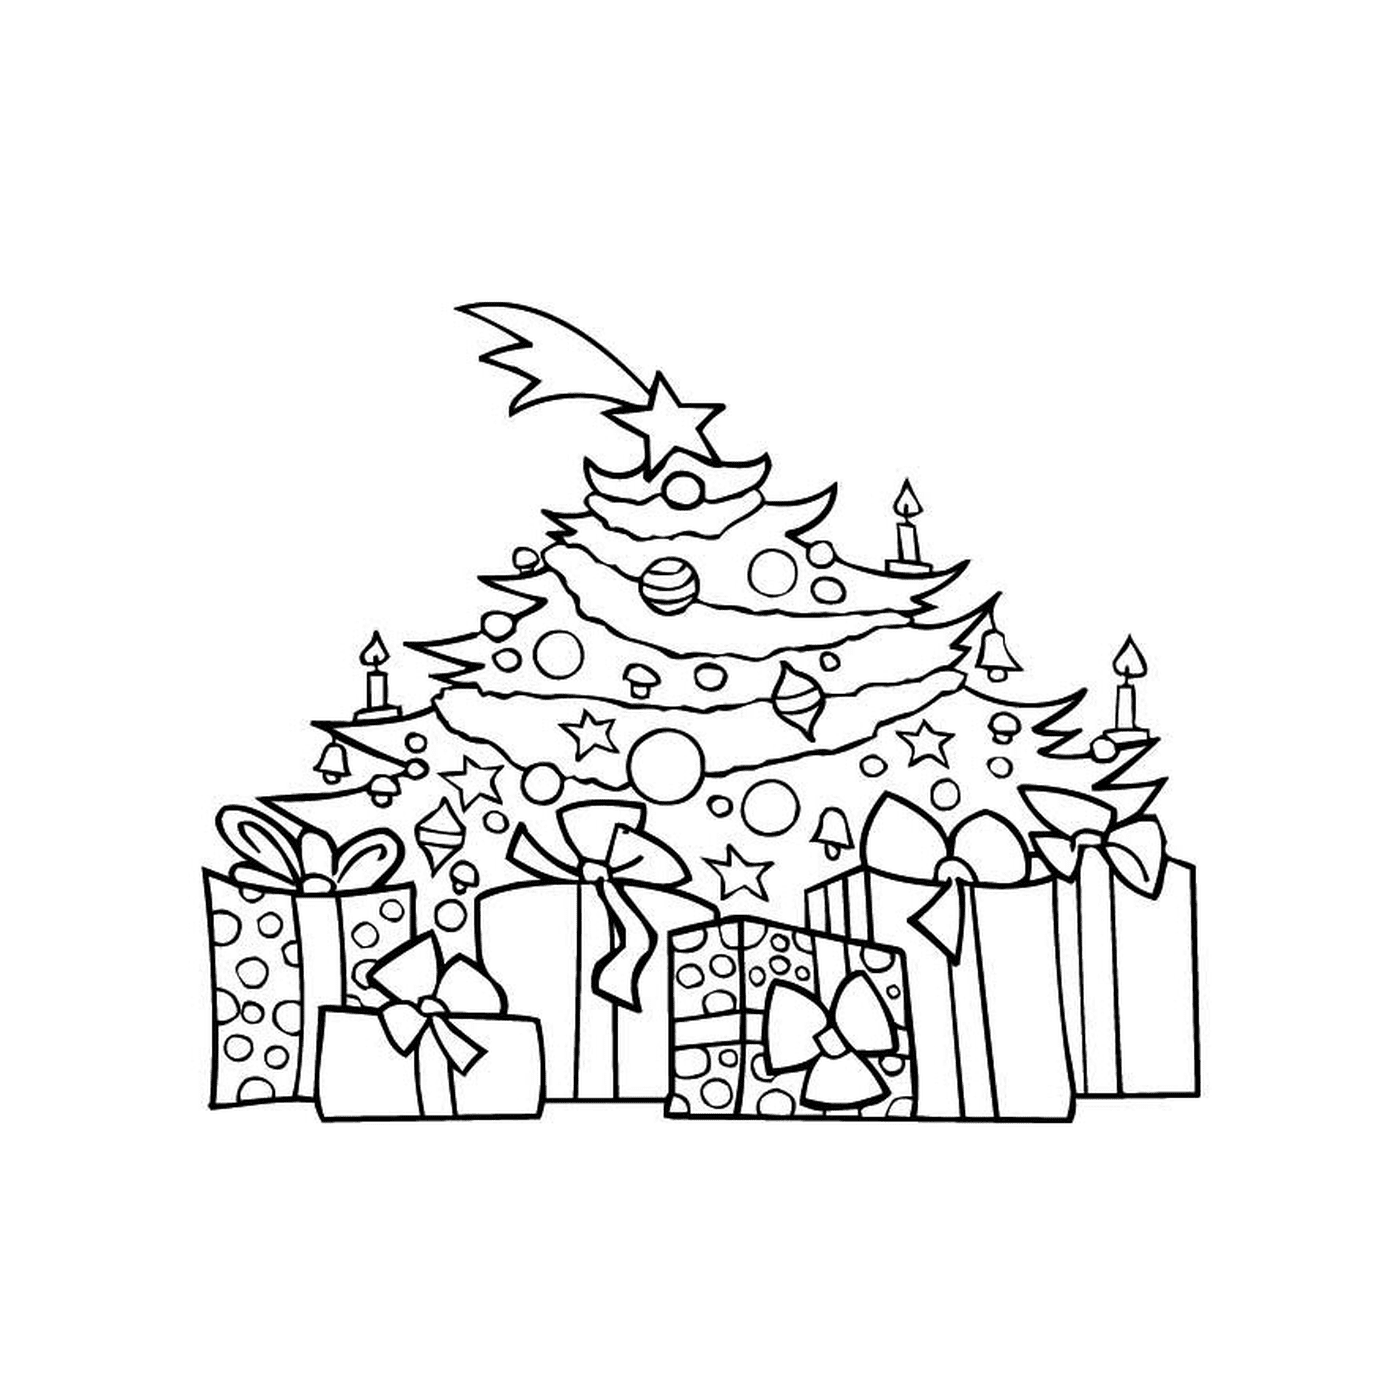  Uma árvore de Natal com presentes 